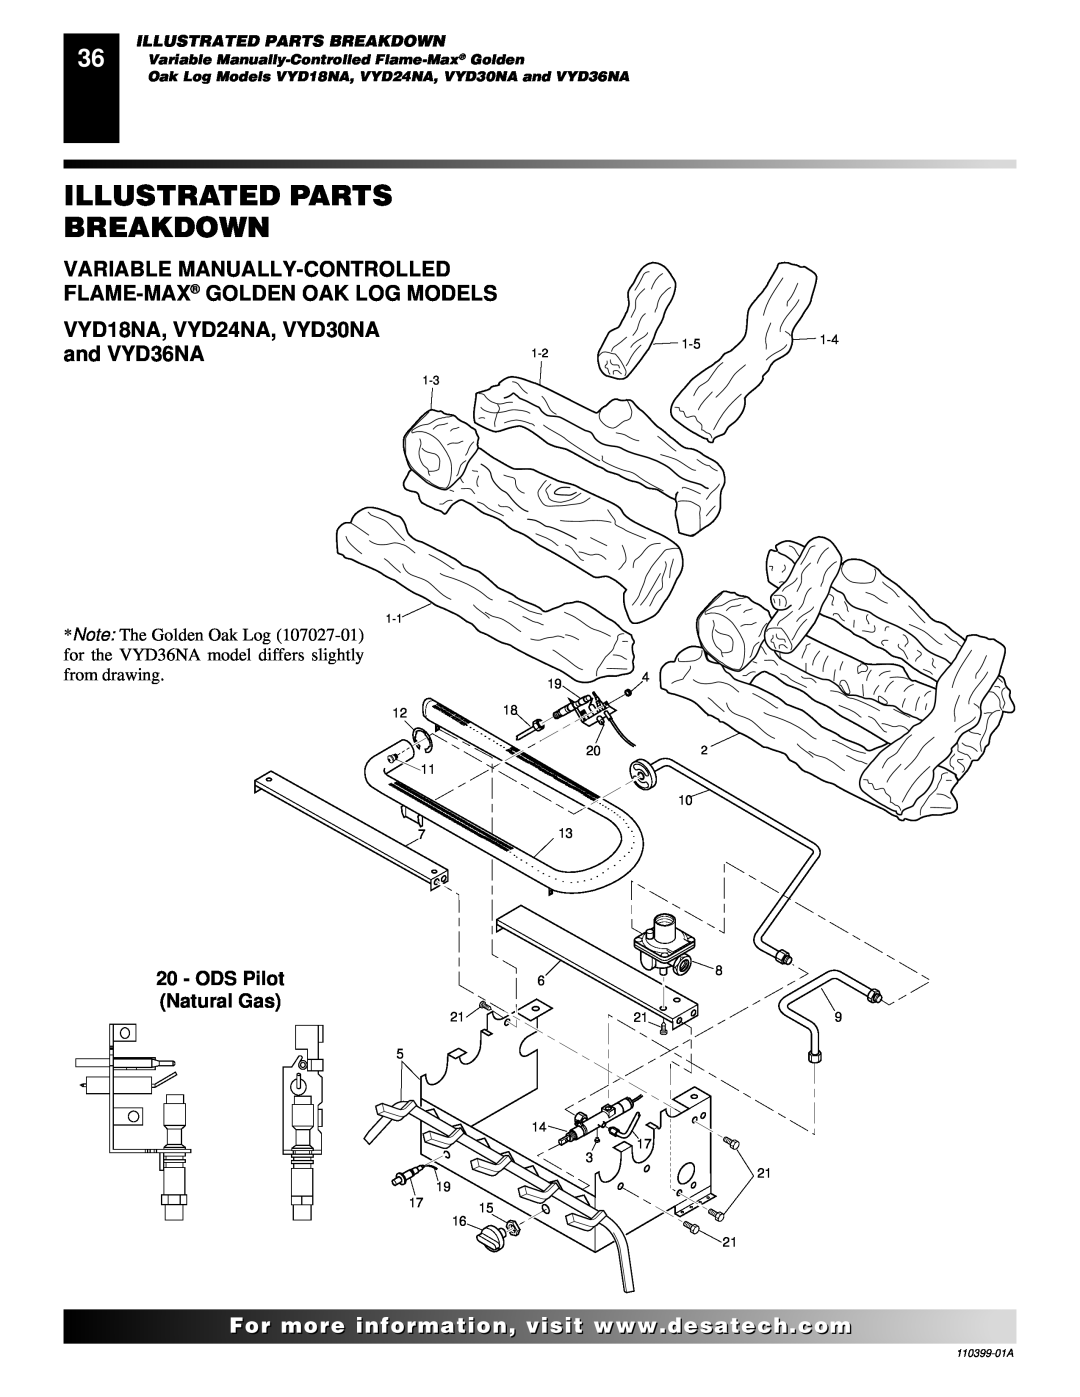 Desa FLAME-MAX Golden Illustrated Parts, Breakdown, VYD18NA, VYD24NA, VYD30NA, and VYD36NA, Natural Gas, ODS Pilot 